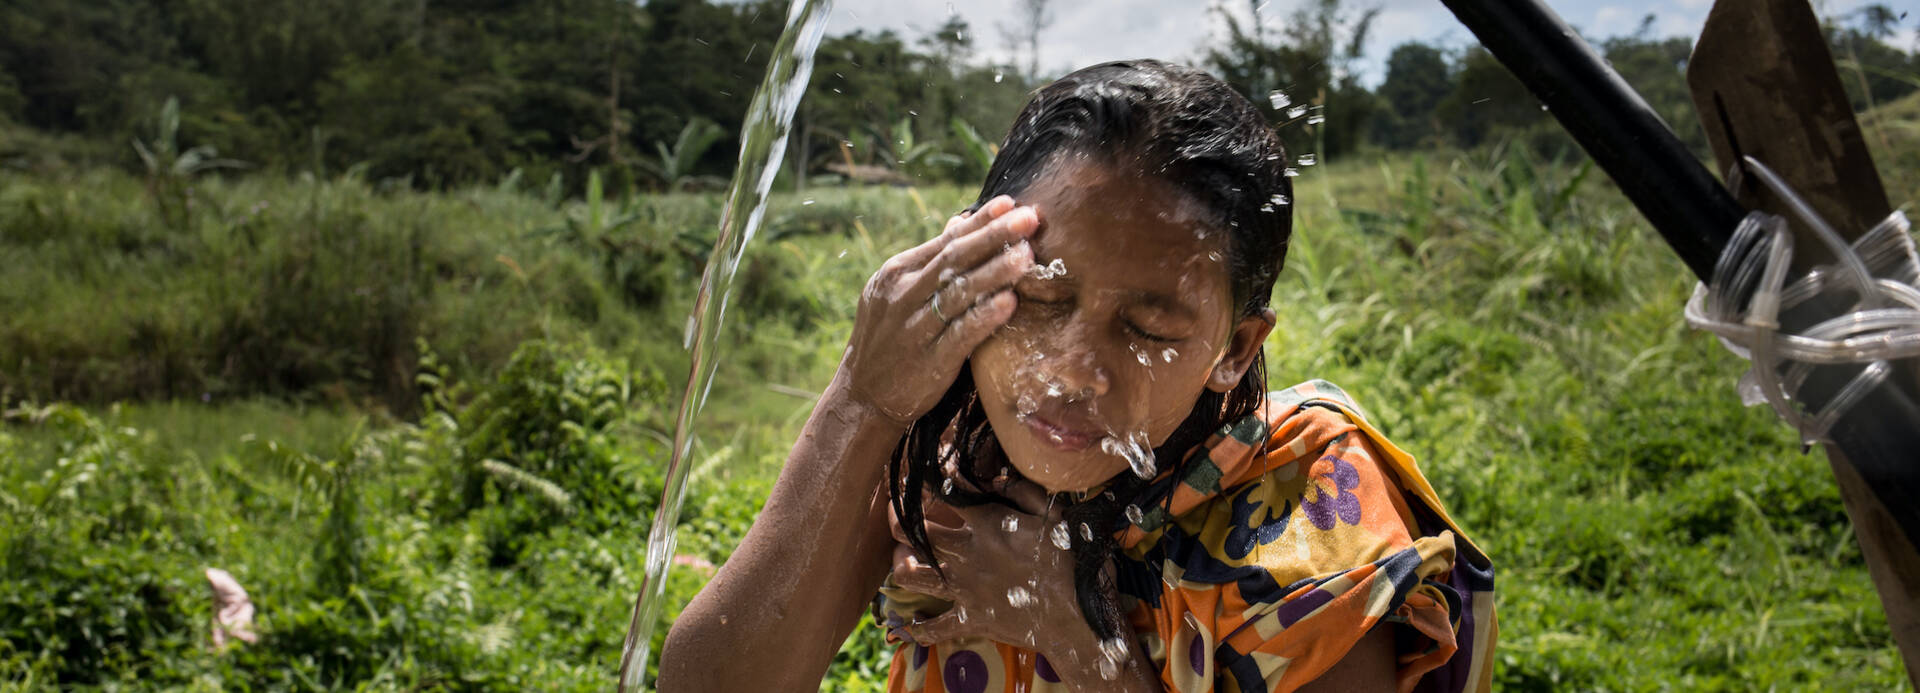 Mädchen wäscht Gesicht mit sauberem Wasser.